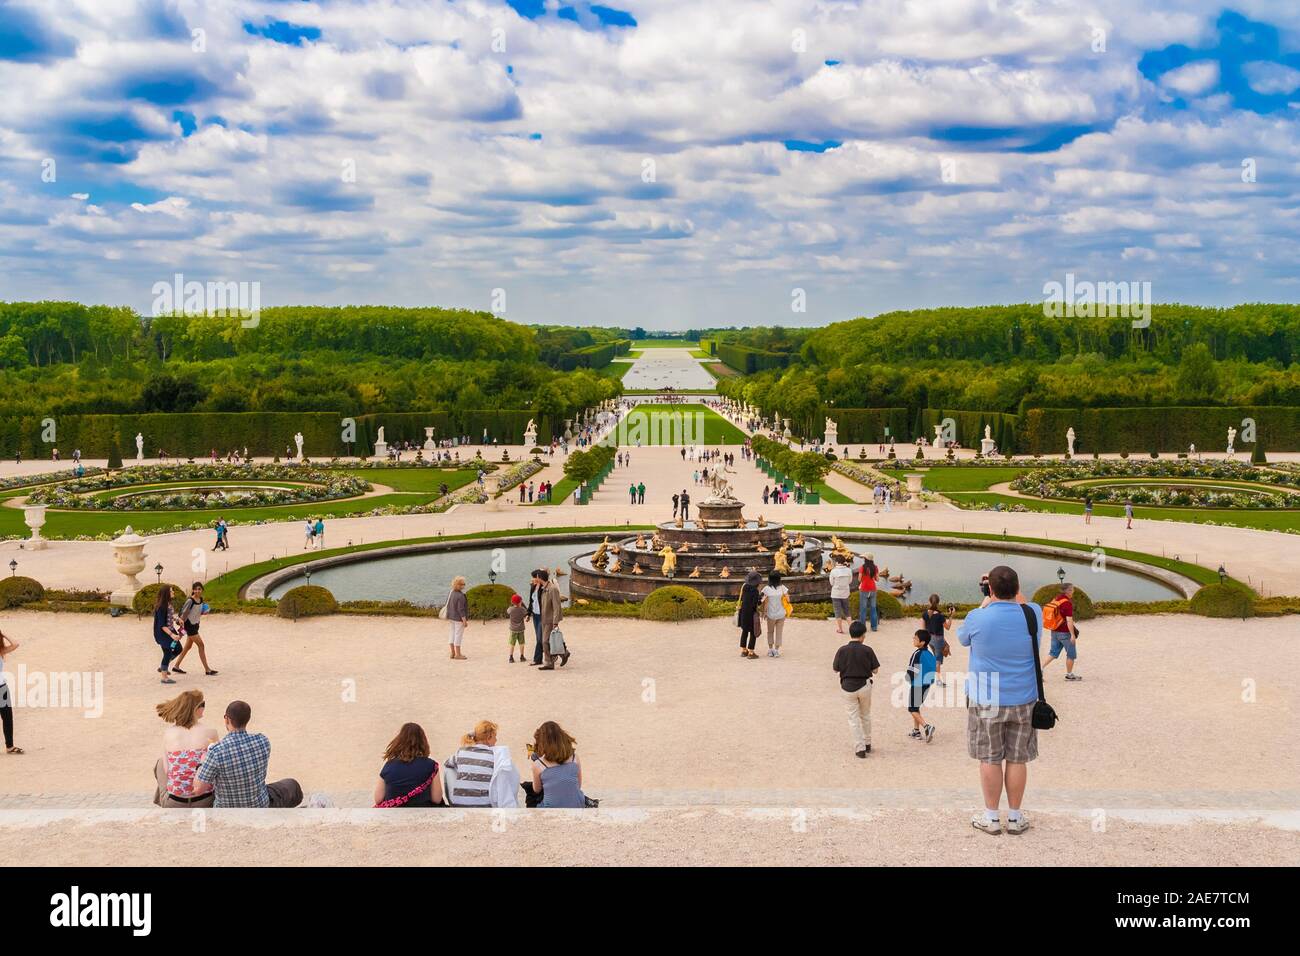 Schönes Panorama des Versailles Gärten aus dem Parterre d'Eau. Besucher genießen die Landschaft Blick aus dem Brunnen der Latona alle den Weg in die... Stockfoto